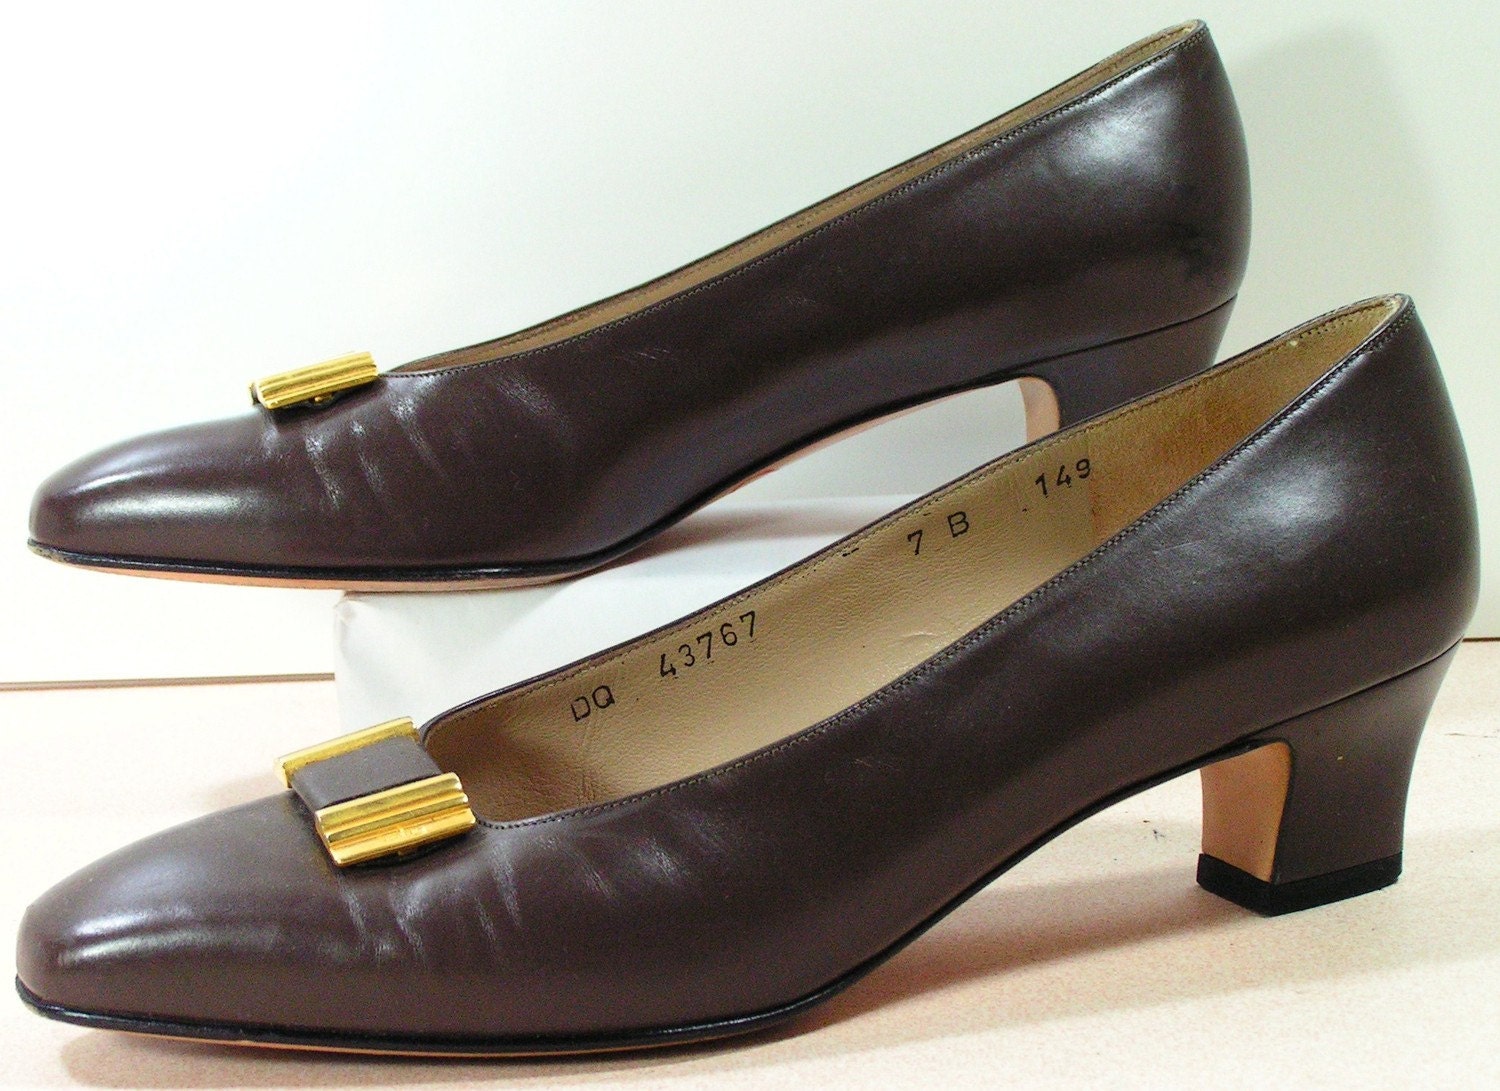 salvatore ferragamo dress shoes womens 7 b m by vintageshoescloset